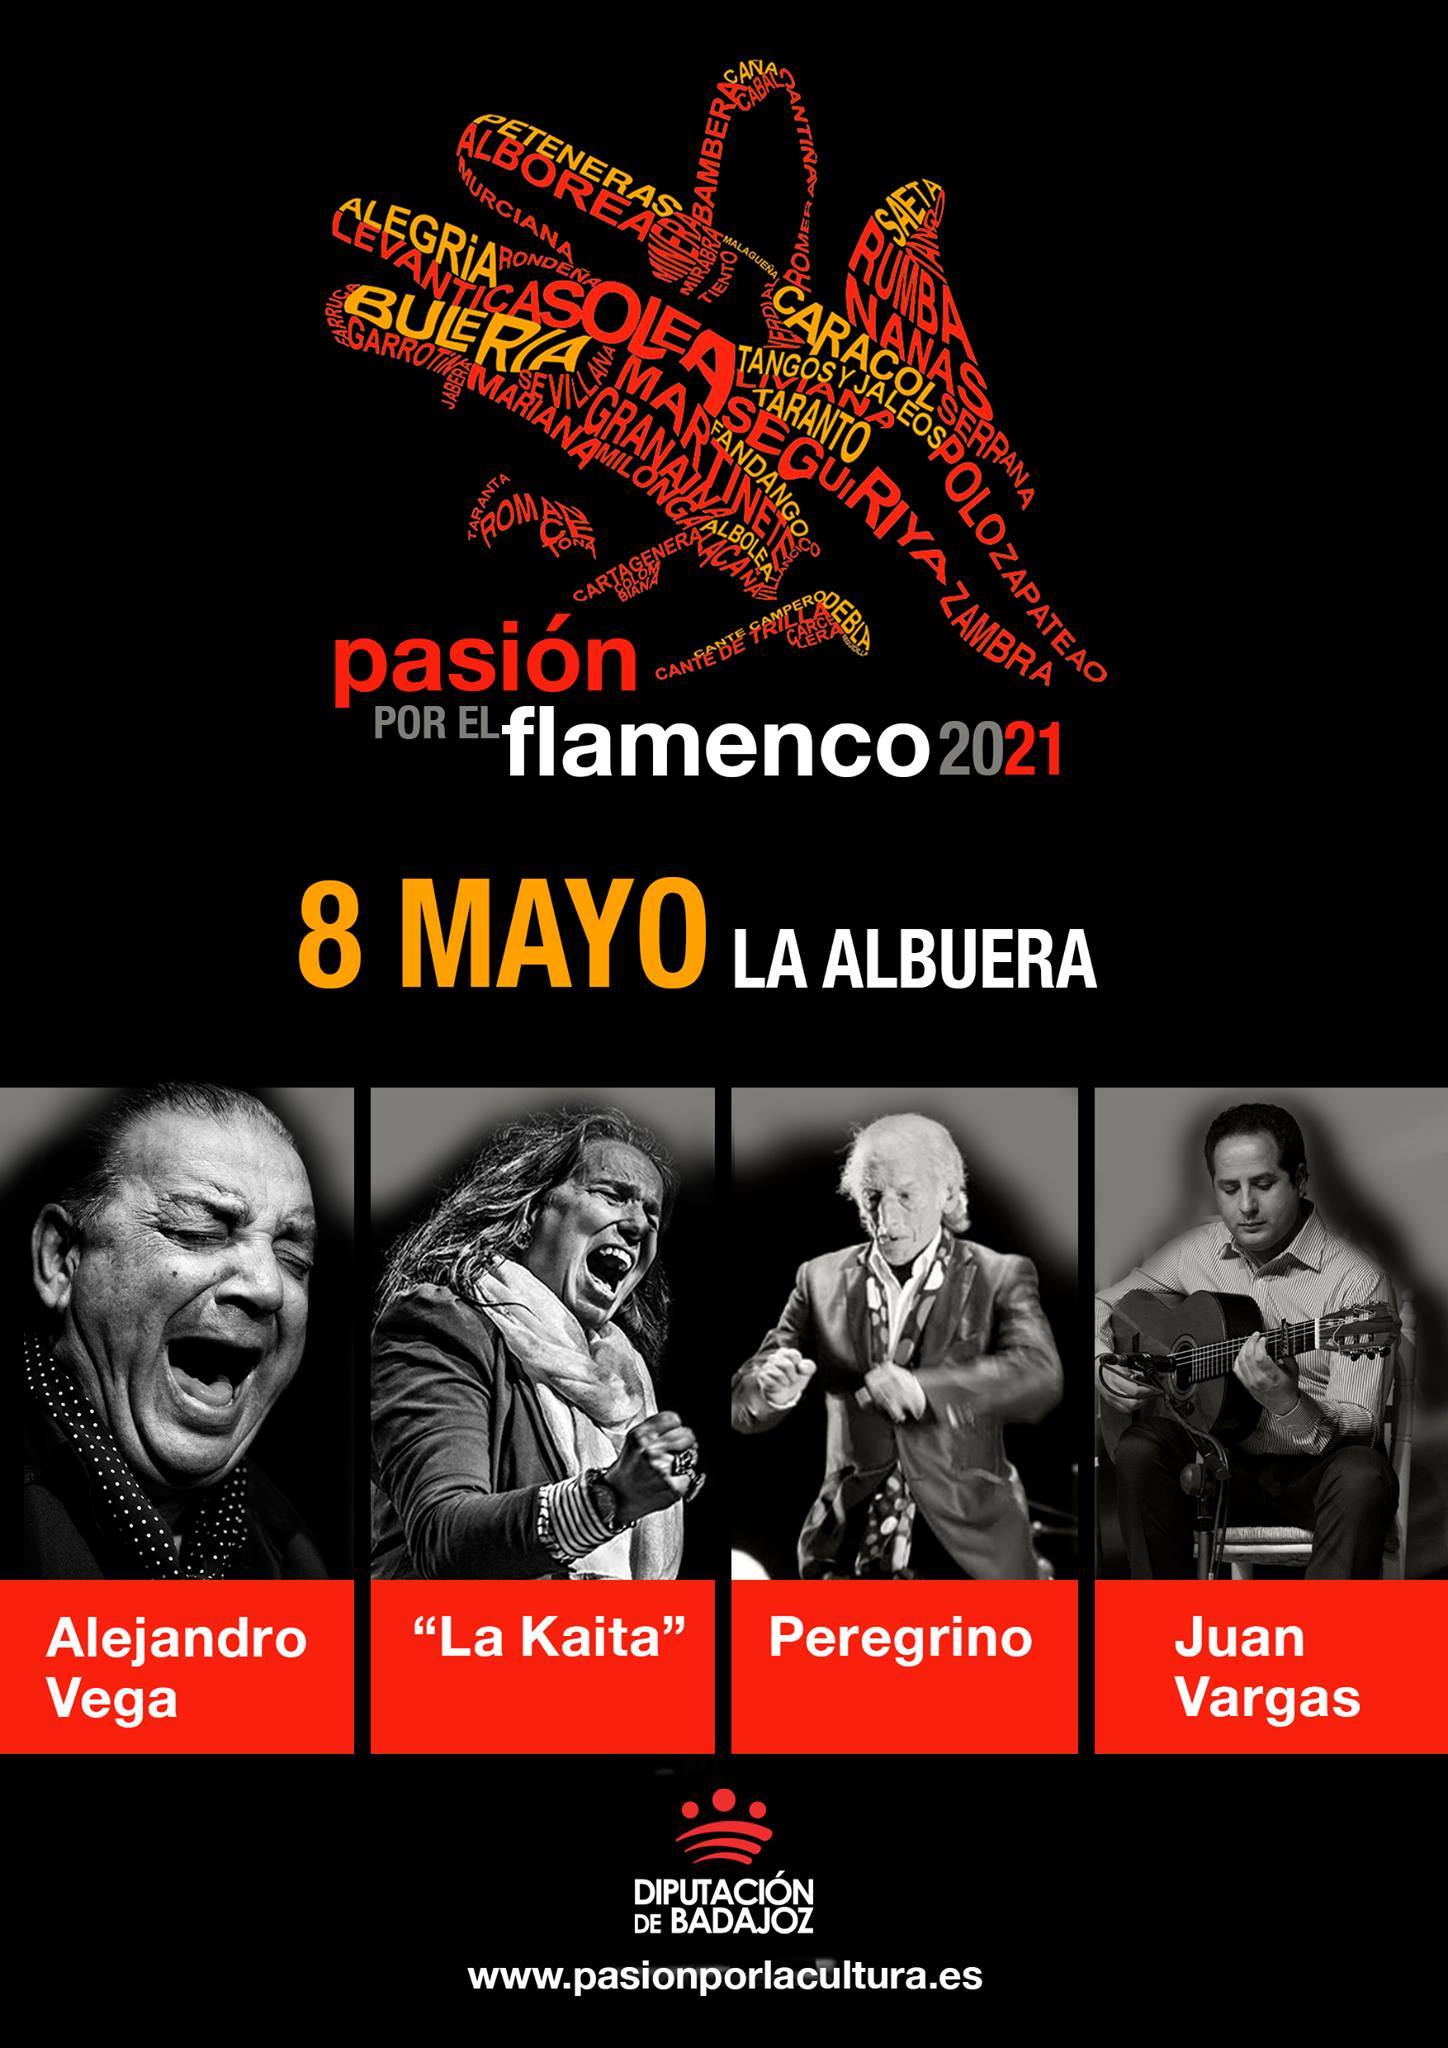 El flamenco autóctono de Extremadura abre el Ciclo Pasión por el Flamenco 2021